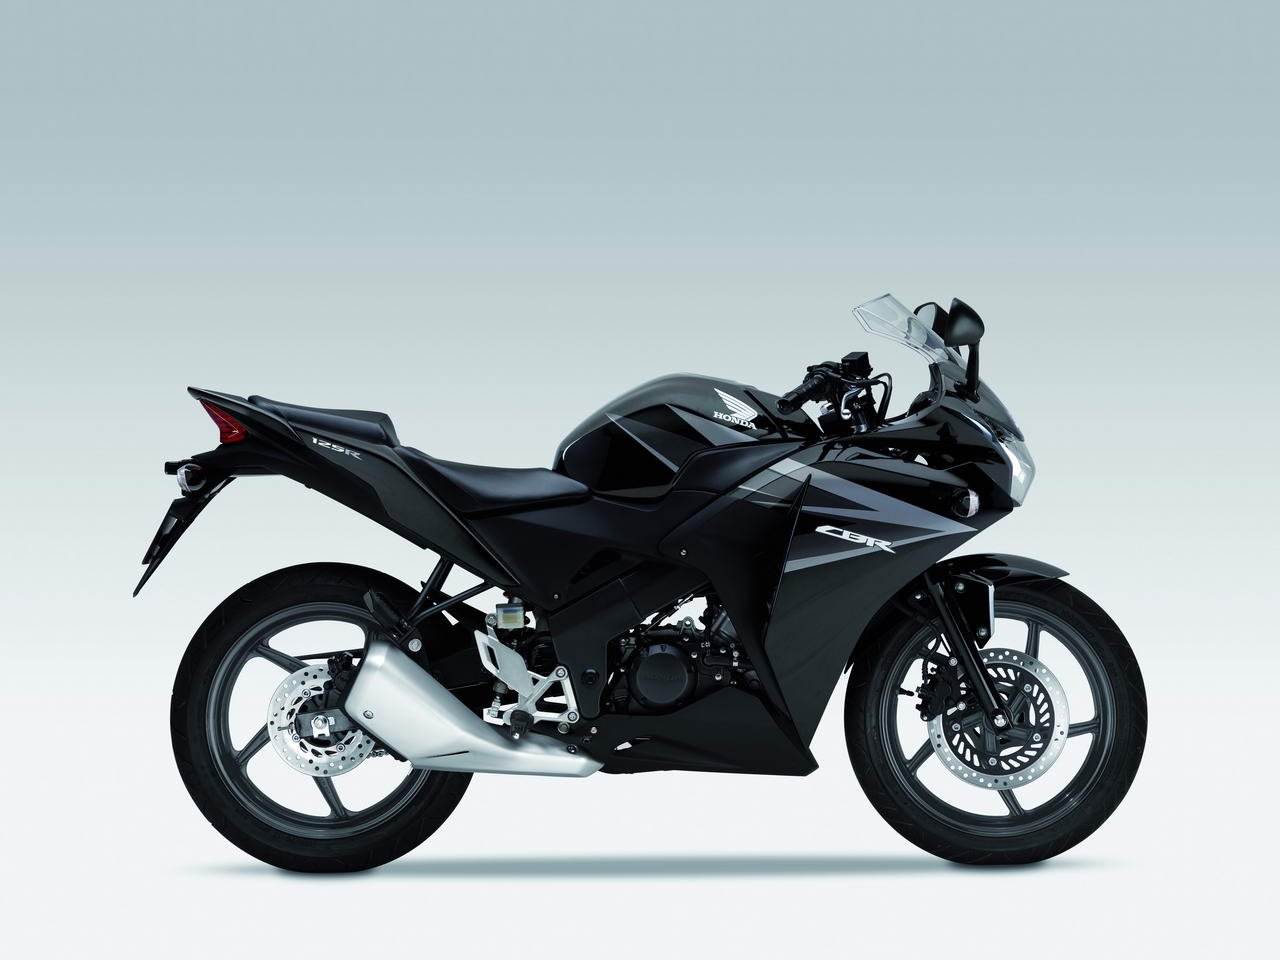 Listino Honda CBR 125 R Moto 50 e 125 - image 14656_honda-cbr125-r on https://moto.motori.net